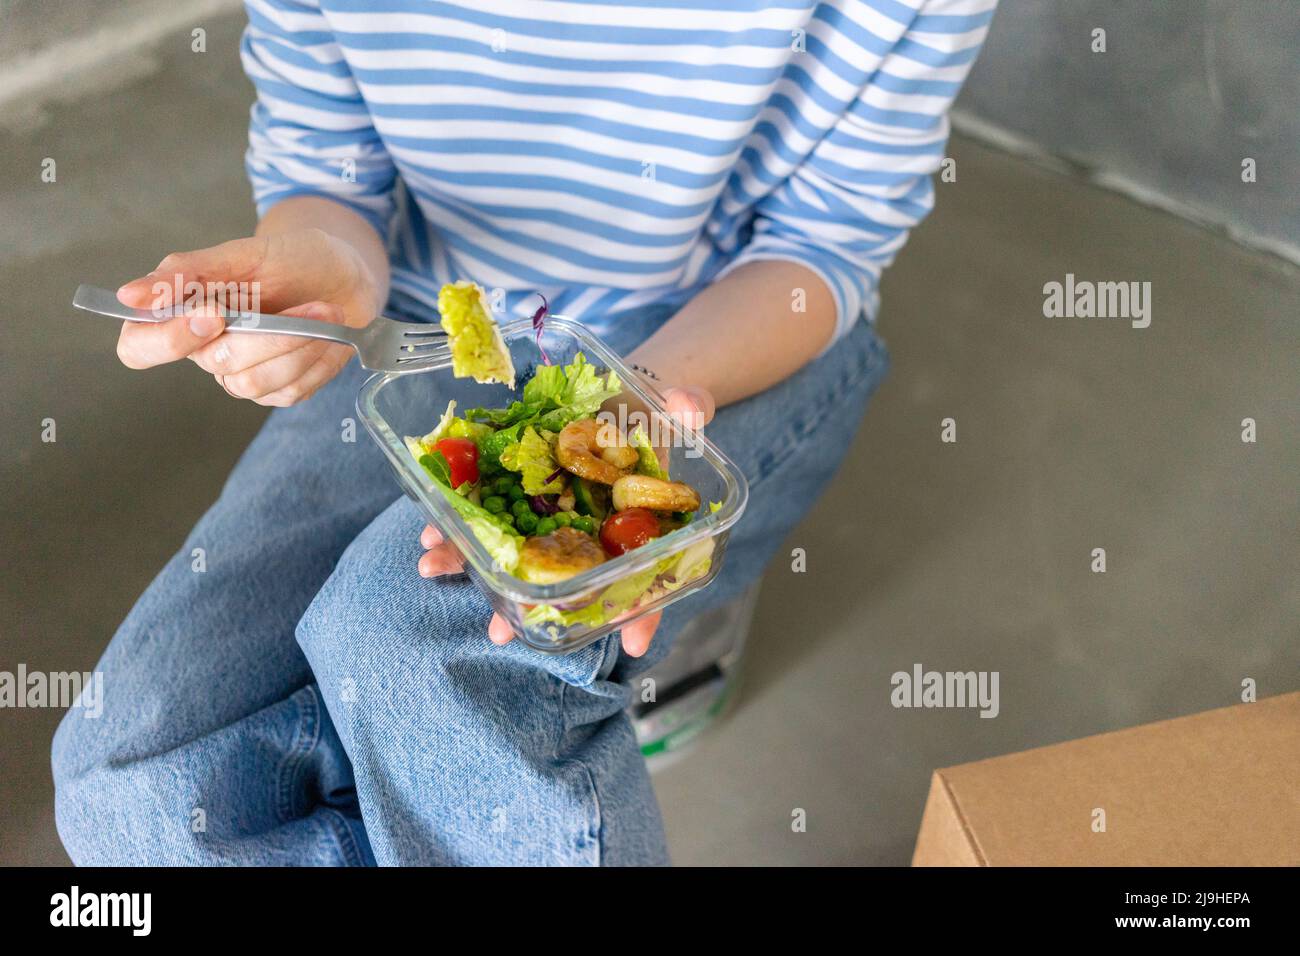 Mains de la femme tenant la fourchette et le contenant avec la salade de crevettes fraîches Banque D'Images